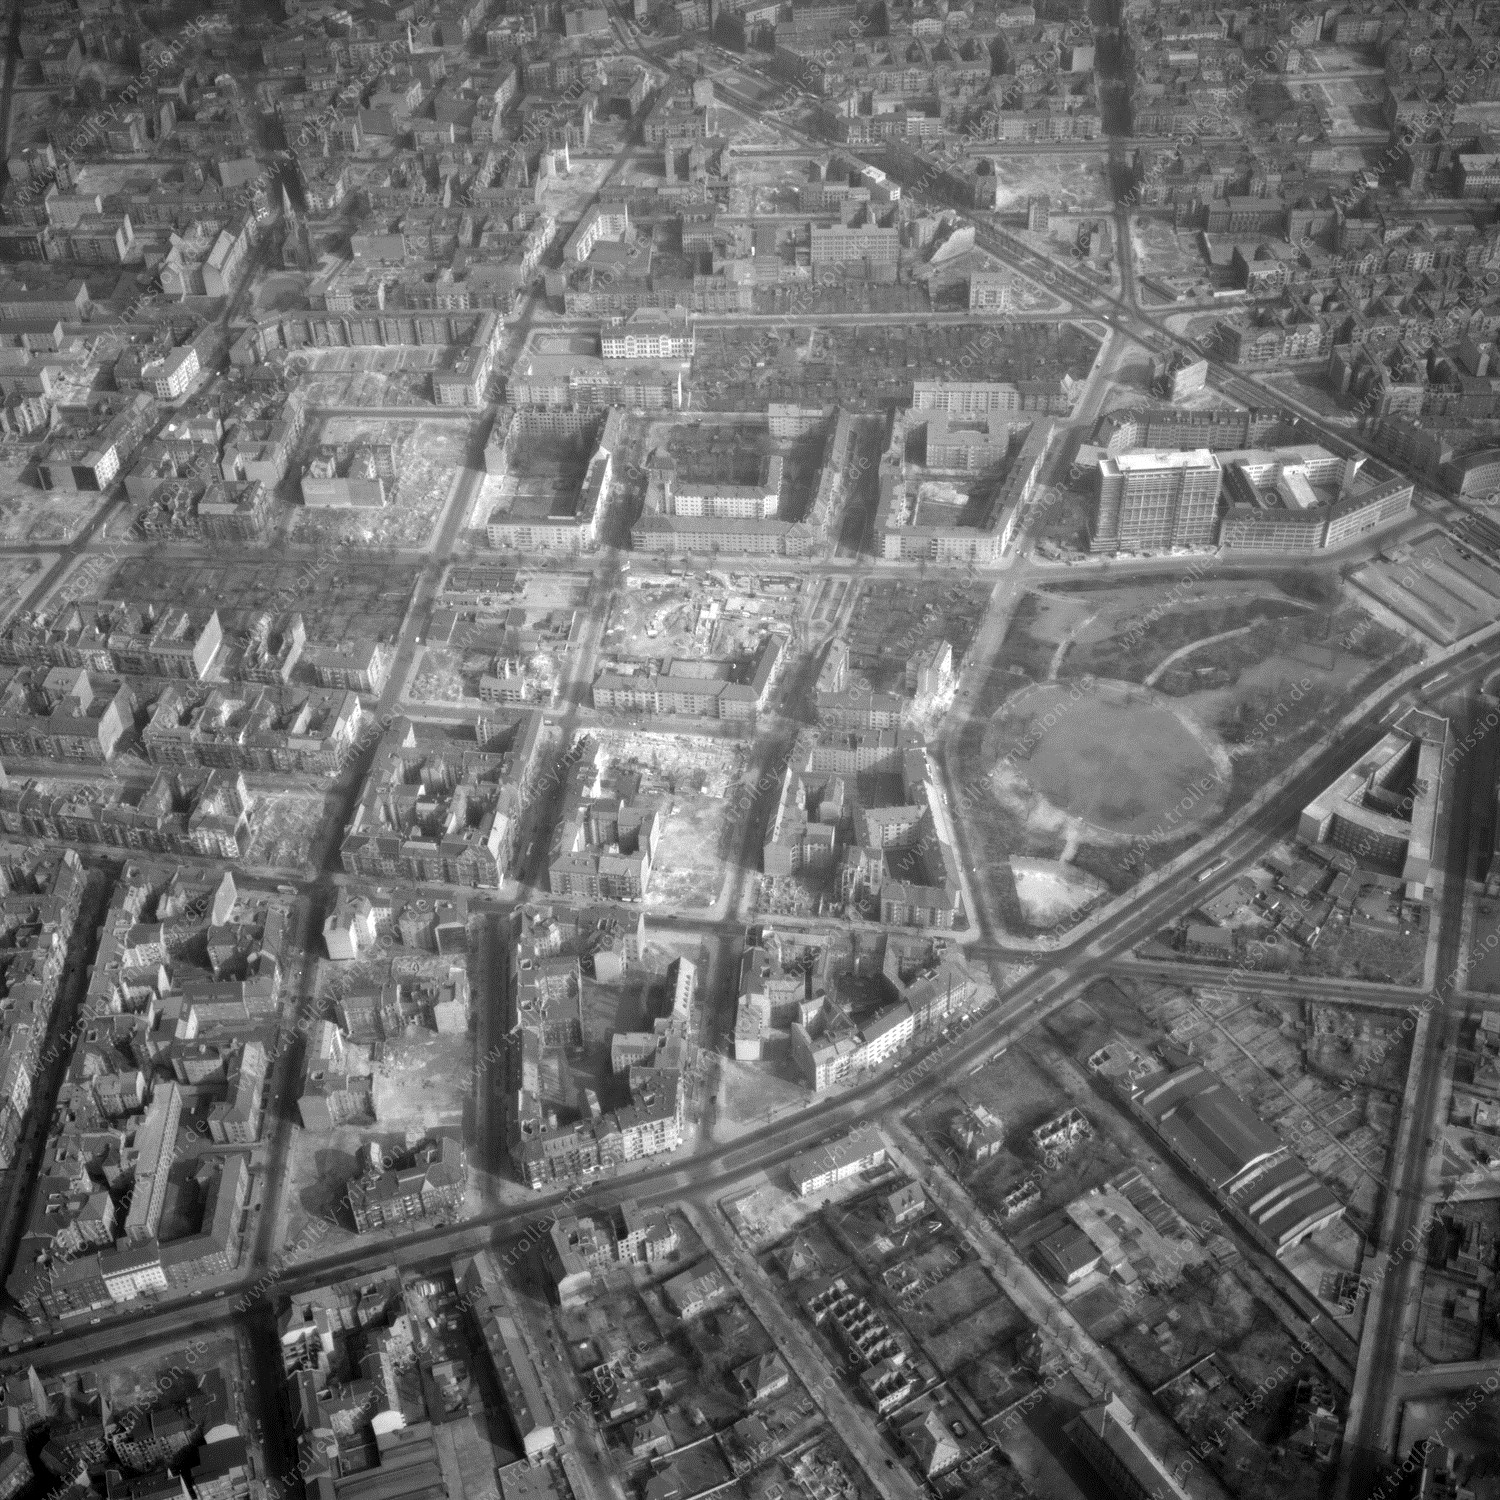 Alte Fotos und Luftbilder von Berlin - Luftbildaufnahme Nr. 09 - Historische Luftaufnahmen von West-Berlin aus dem Jahr 1954 - Flugstrecke Charlie